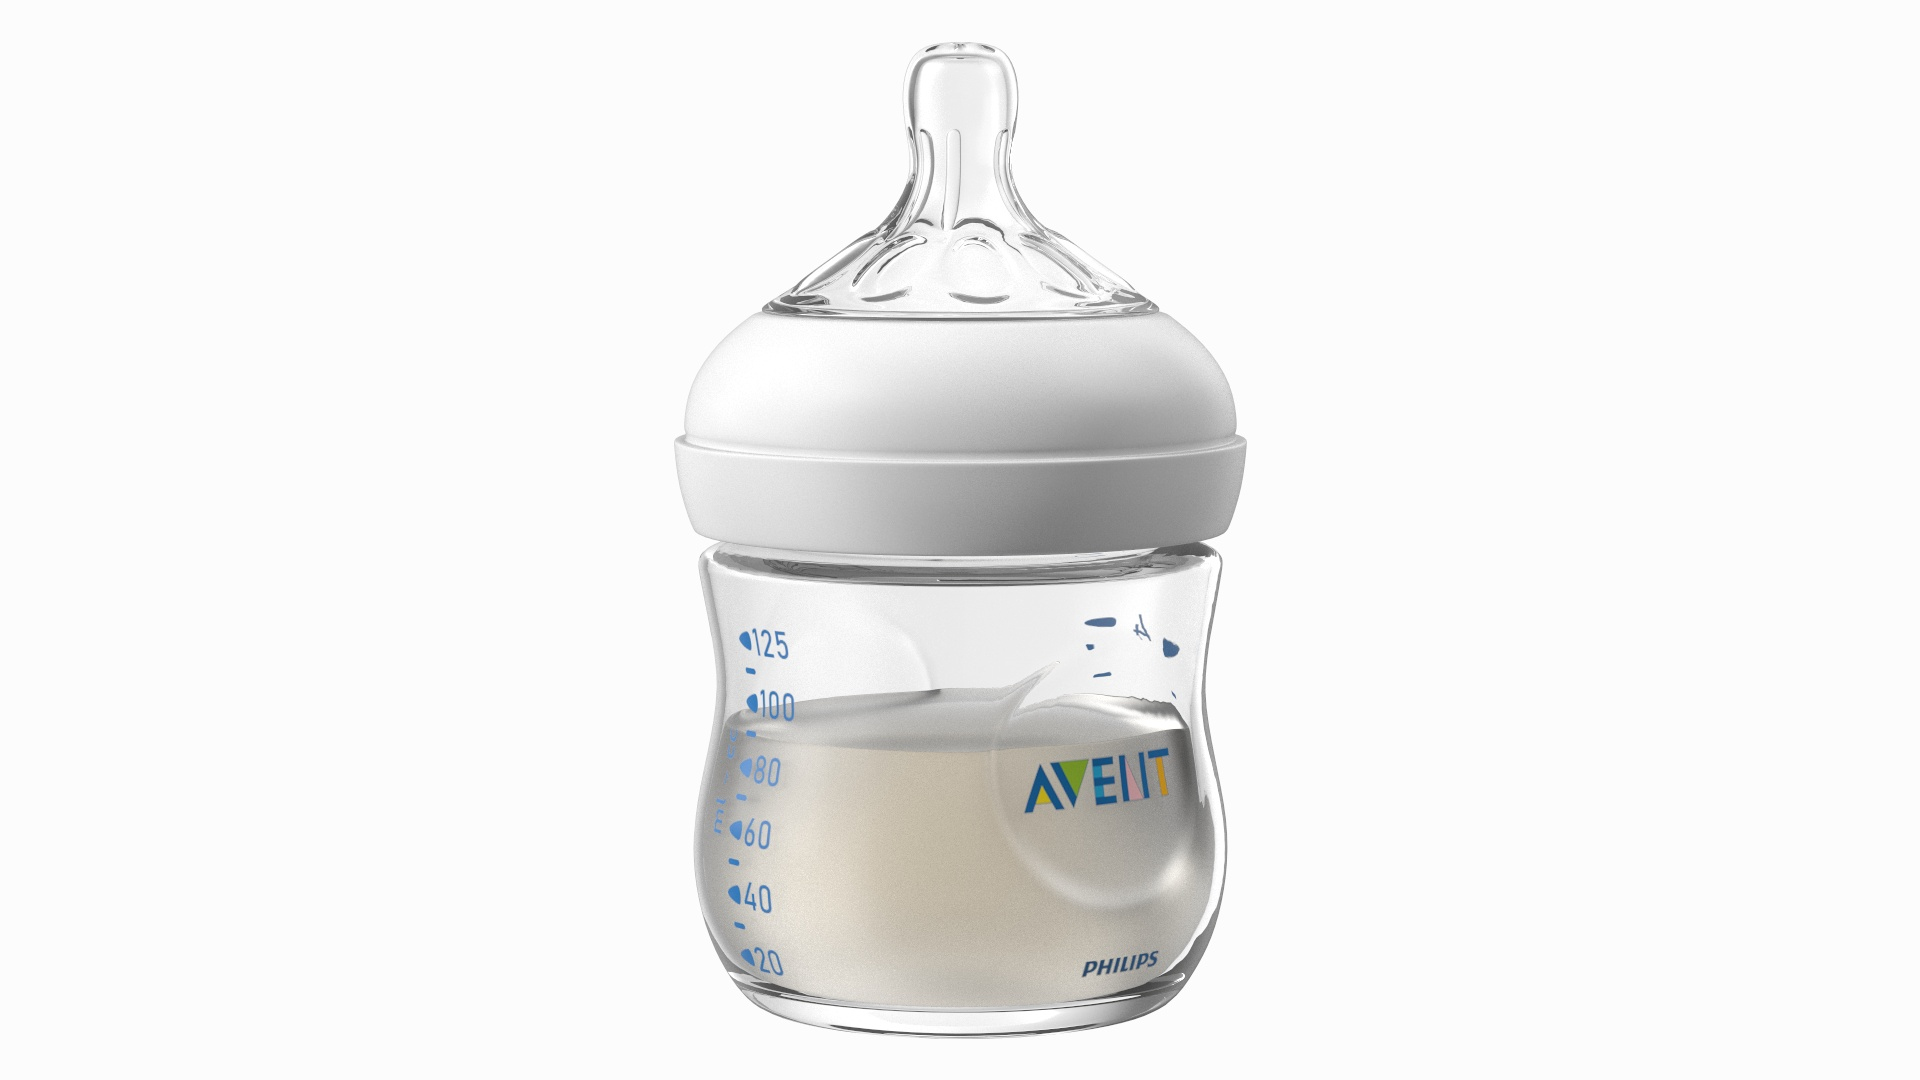 Buy Philips Avent Natural Response Glass Baby Gift Set · Hong Kong